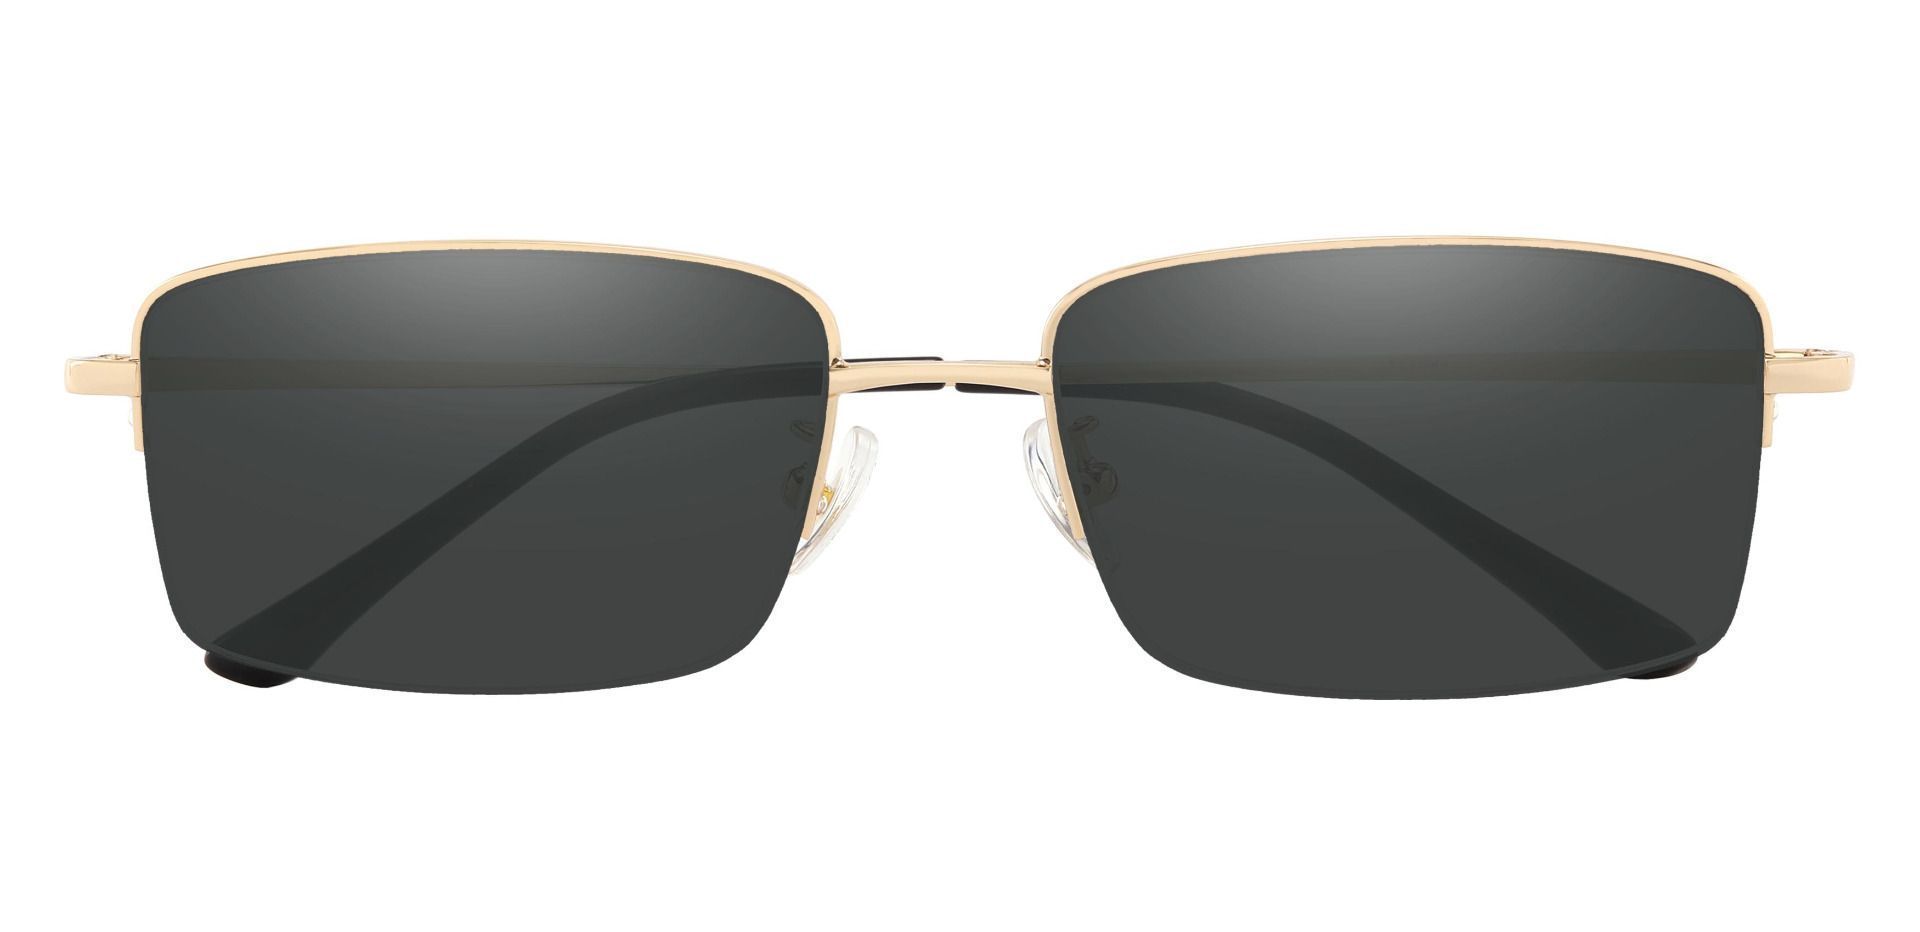 Bellmont Rectangle Progressive Sunglasses - Gold Frame With Gray Lenses